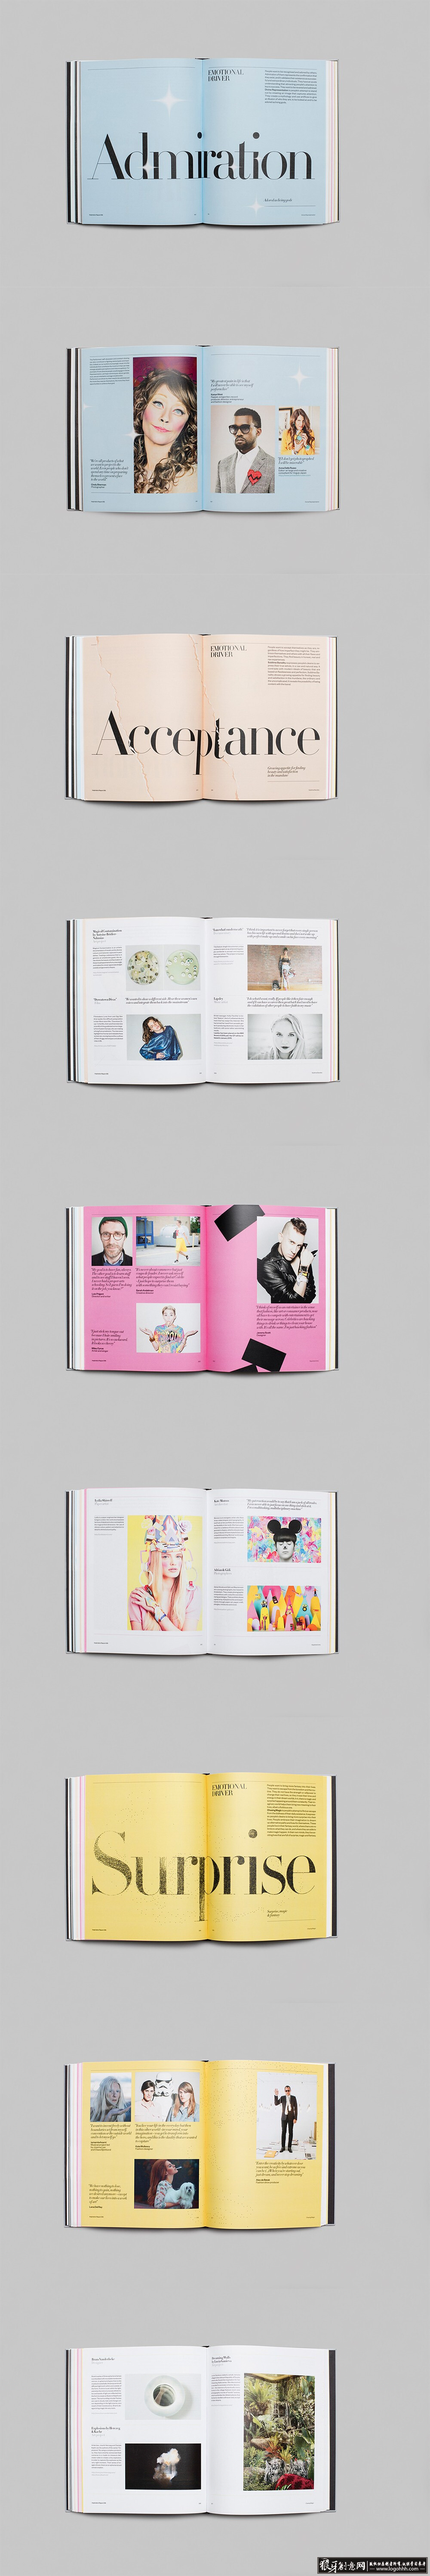 创意画册 时尚杂志设计 时尚编辑设计 创意杂志设计 画册设计 杂志内页设计 版式设计 编辑设计